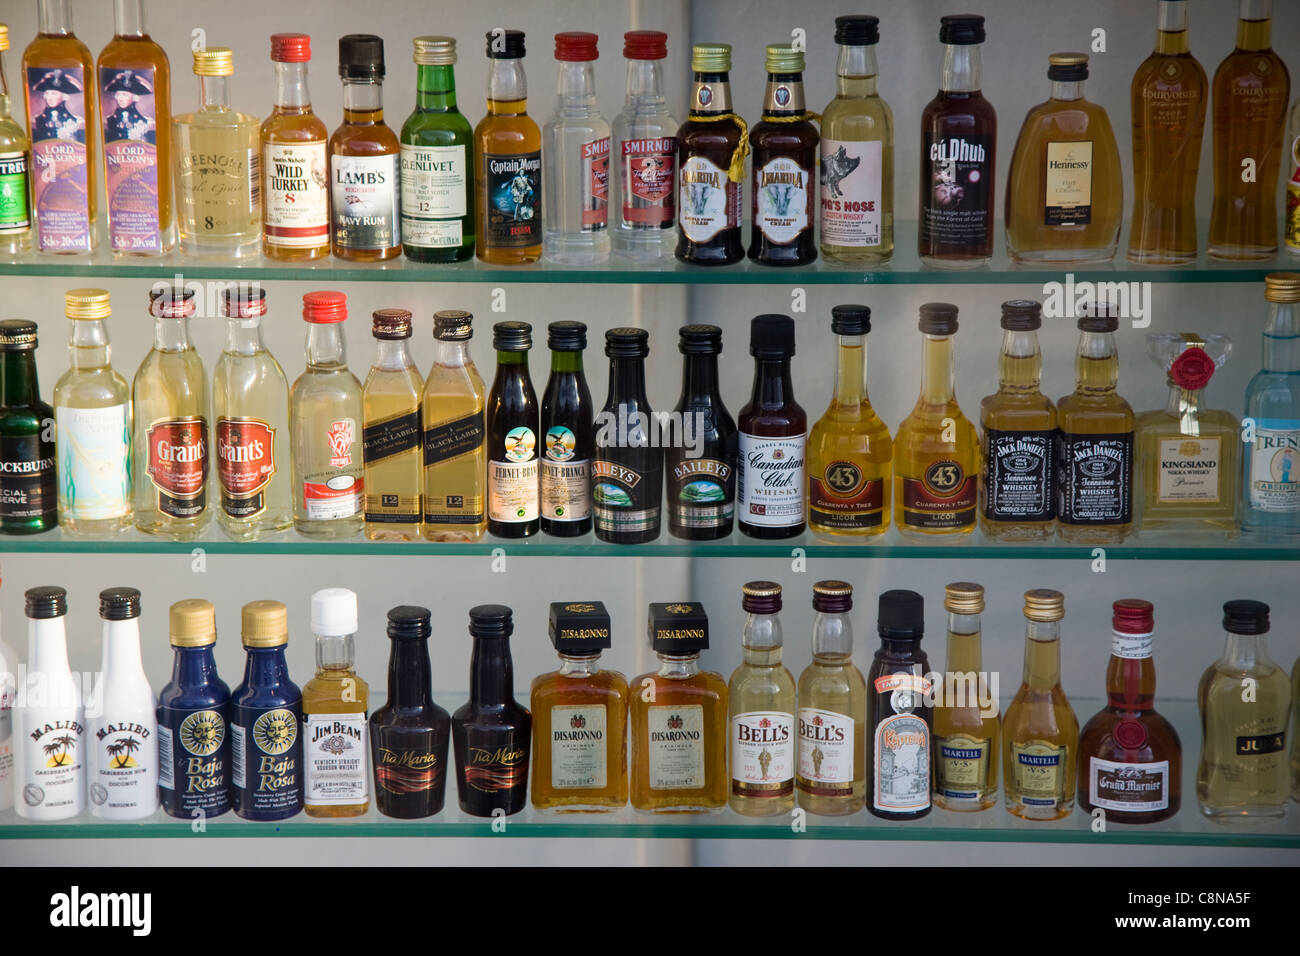 Flacons miniatures de whisky, brandy, vodka, cognac, gin, et d'autres types d'alcool dans une vitrine, Blackpool, Royaume-Uni Banque D'Images